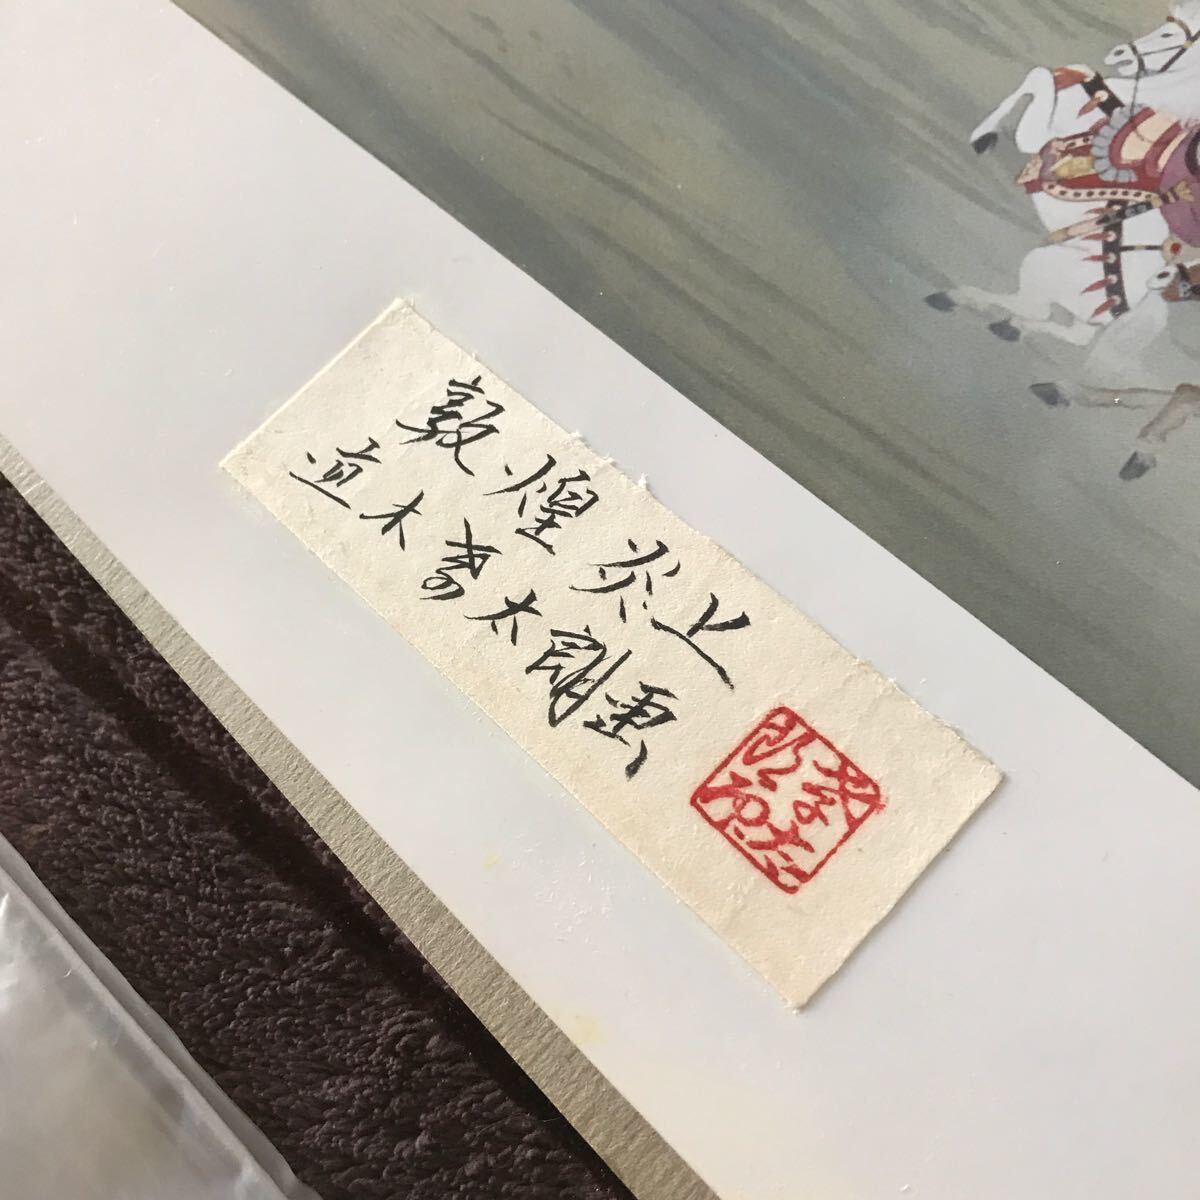 珍品 ※絵は印刷です。 直木孝太郎さん宛封筒 直筆サイン 記録用作品 まとめて 大きい額のサイズは70.5cm 横90cm ガラスです。 日本画_画像8